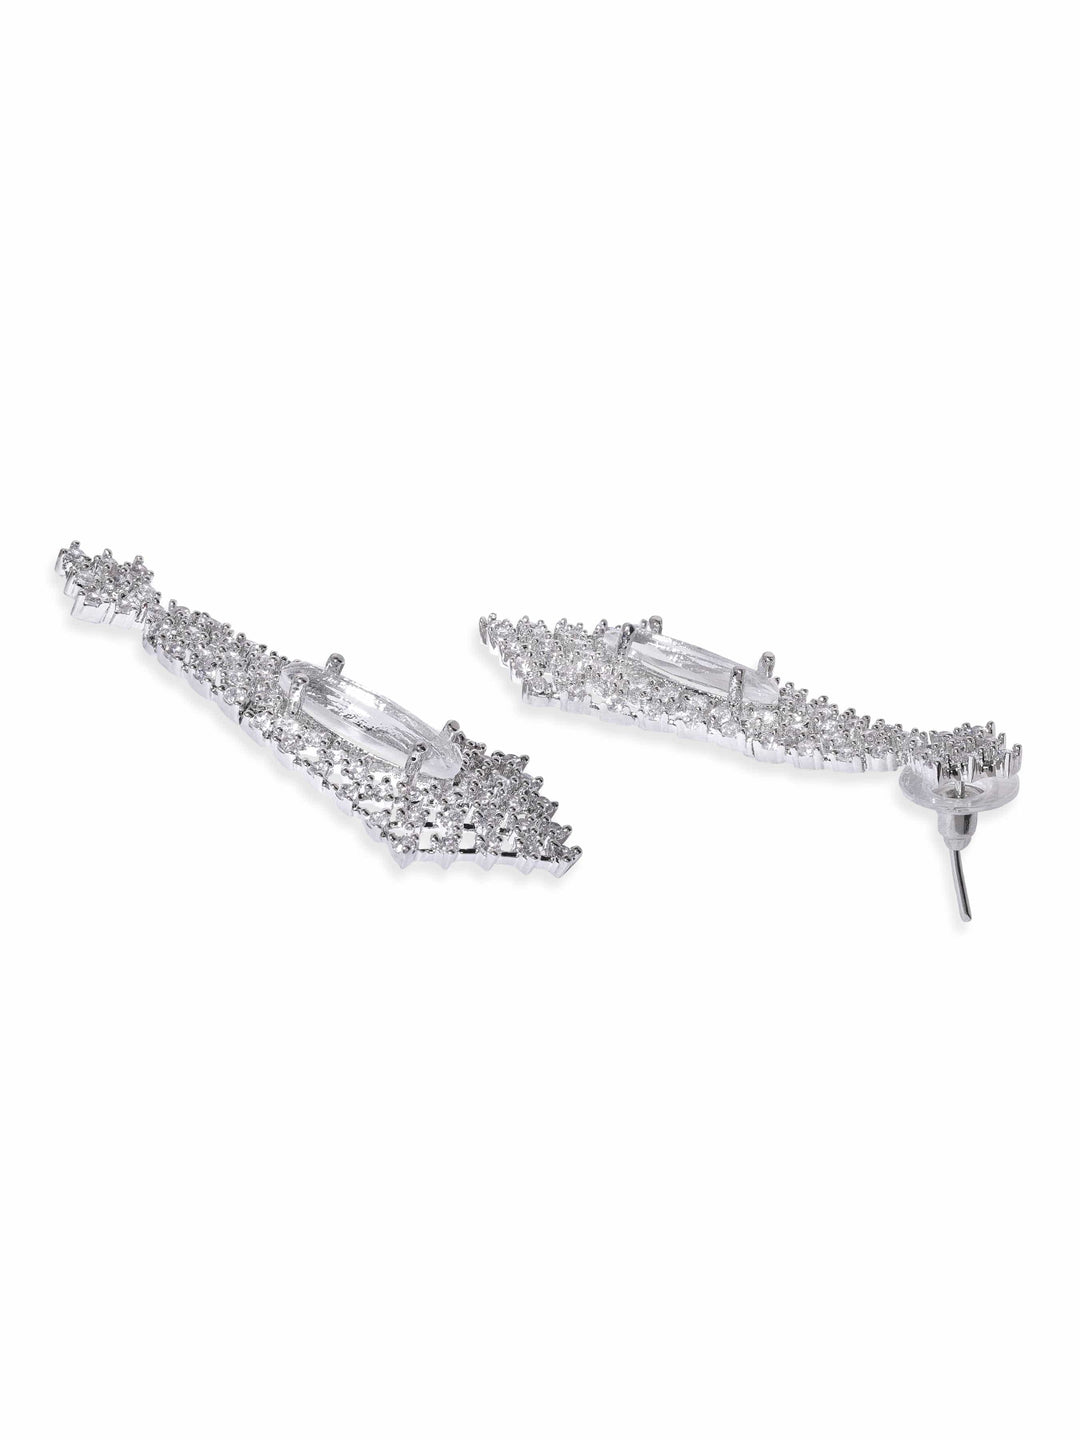 Rubans Rhodium Plated Pave Zirconia Studded Statement Choker Necklace Set Jewellery Sets